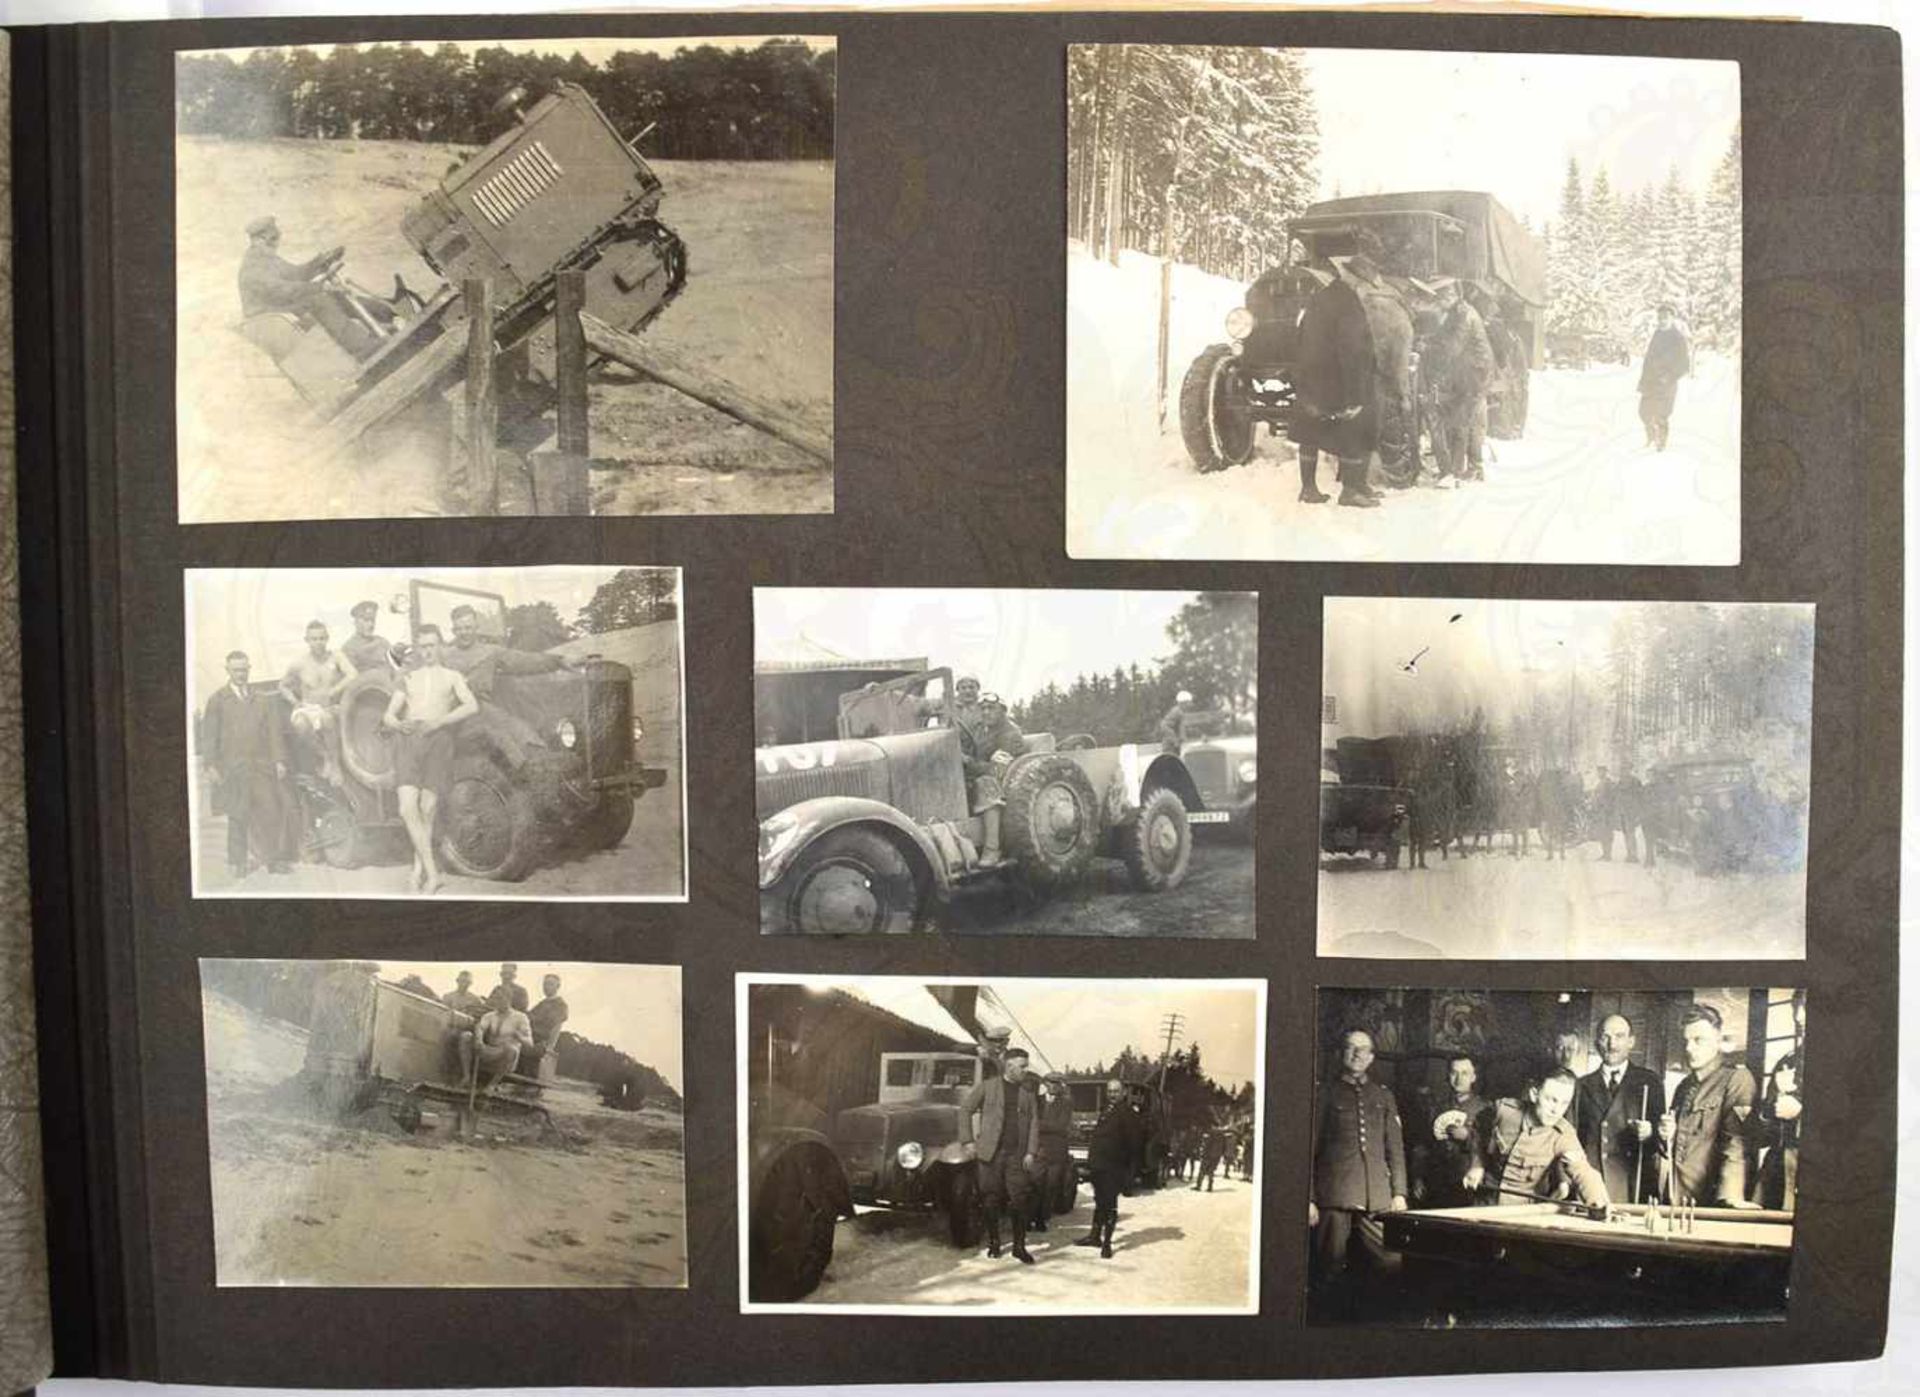 3 FOTOALBEN EINES AUTOINGENIEURS, gesamt 395 Fotos, ca. 1925-1955, teils AK bis A 5, viele PKW, auch - Bild 9 aus 14